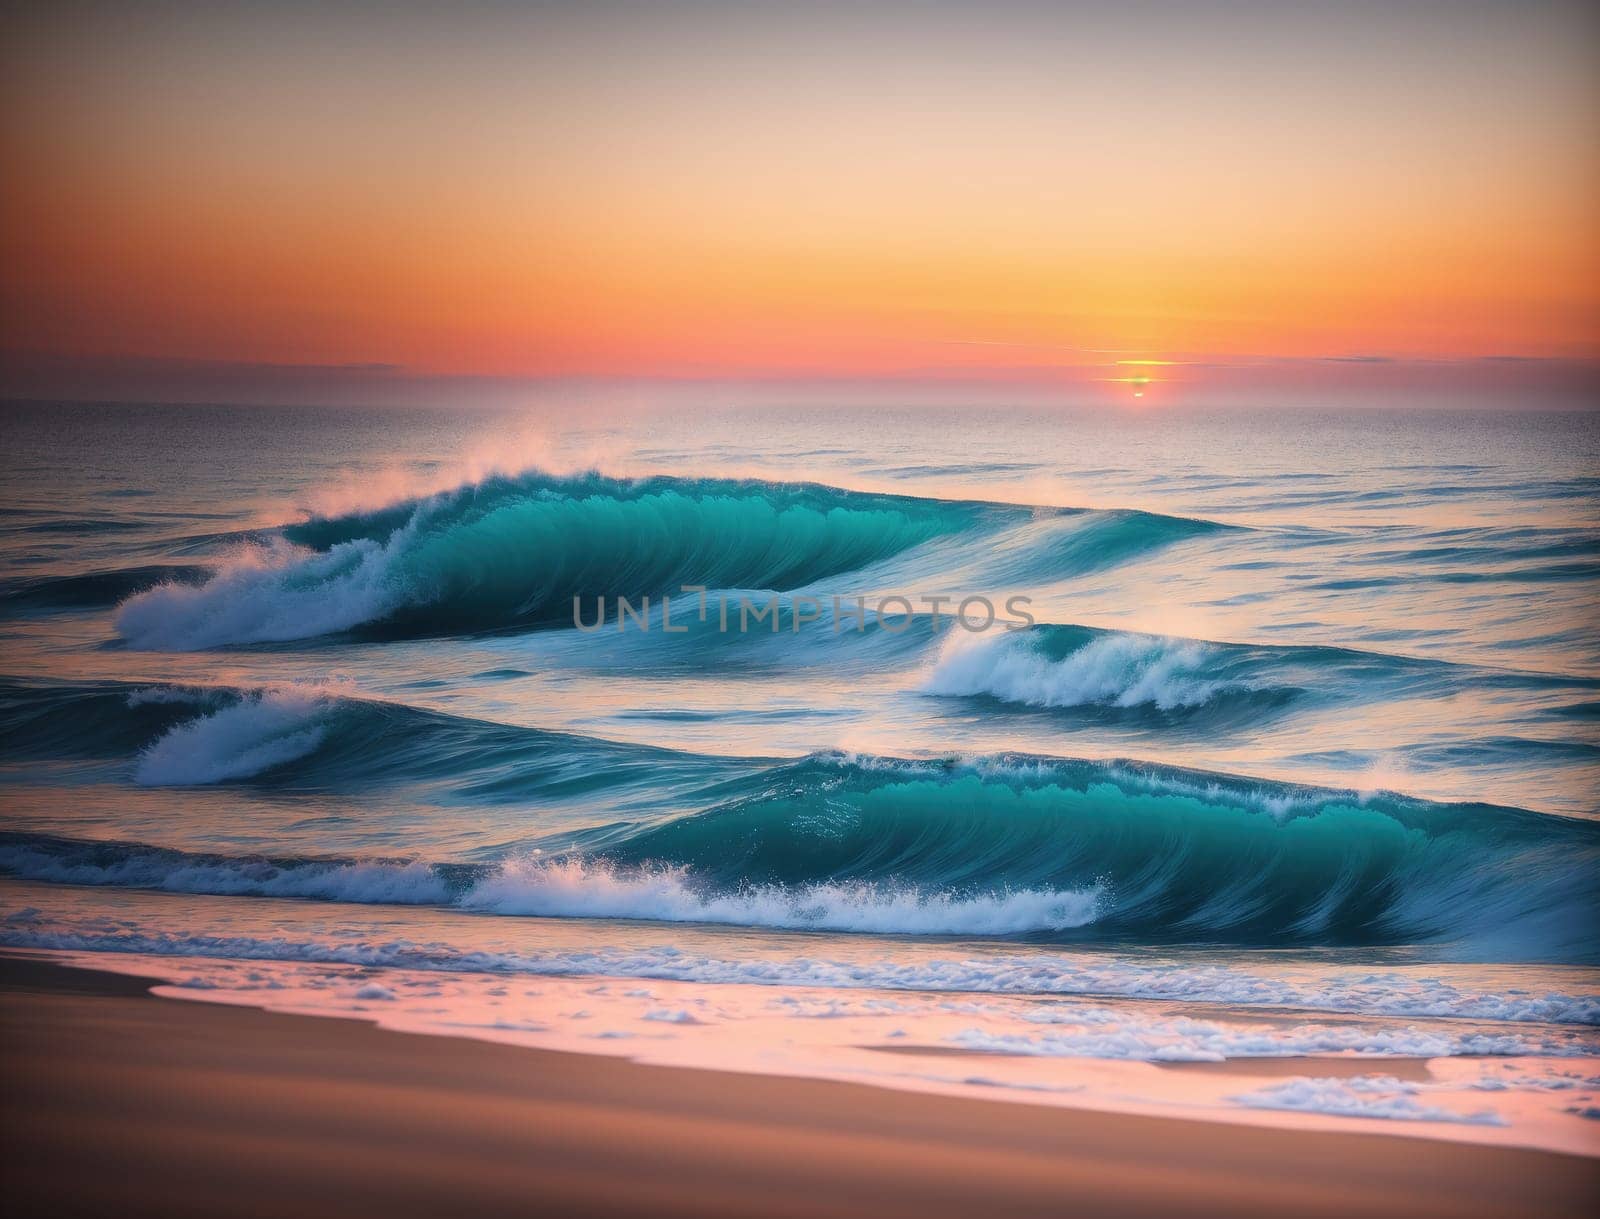 Sunrise on the Beach by creart